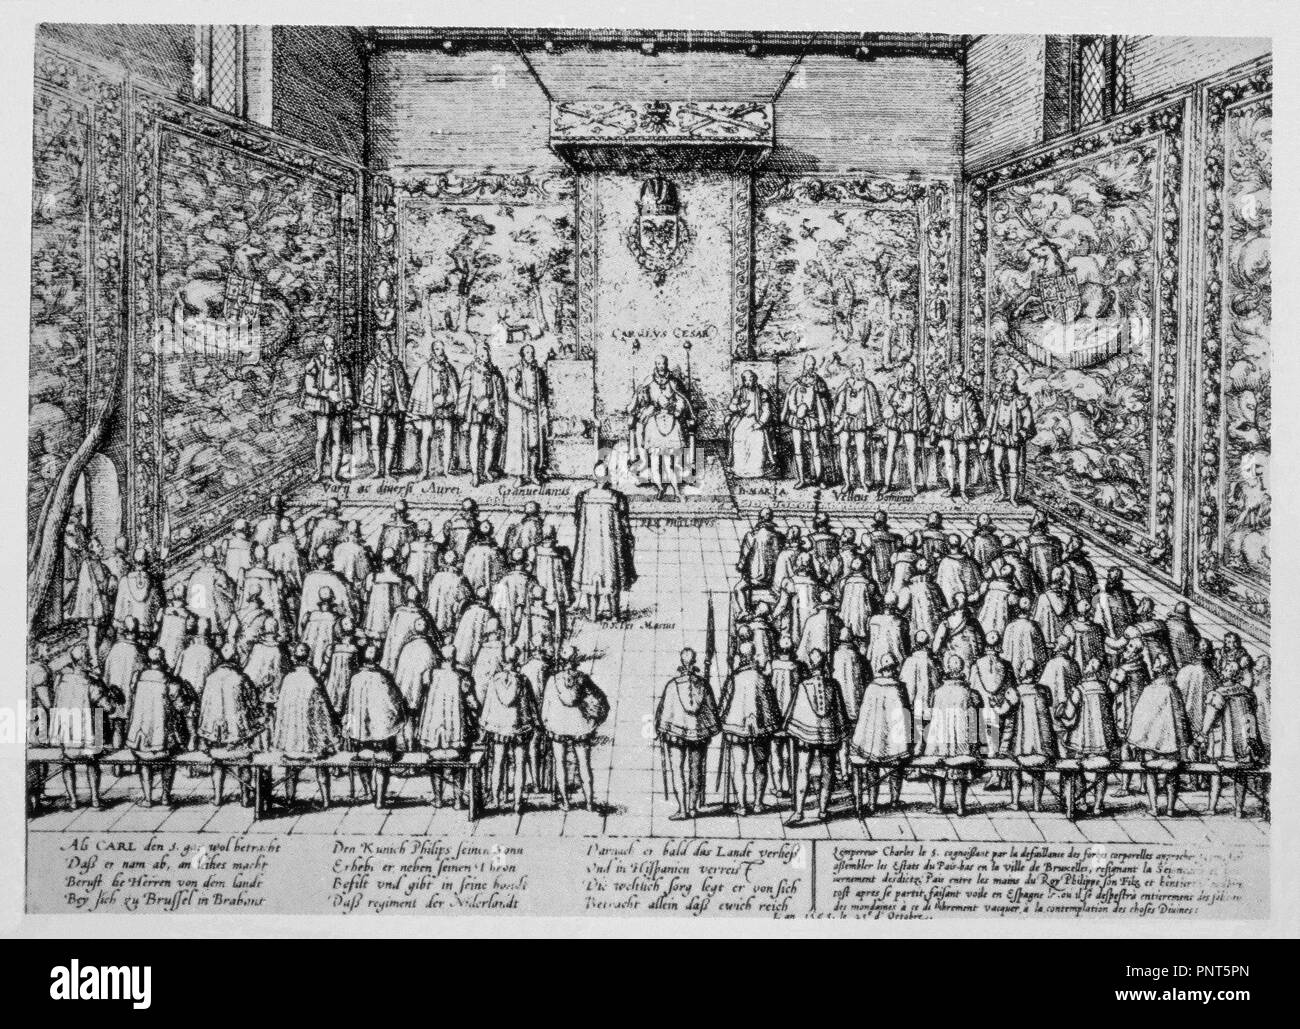 CARLOS V ABDICA DE LOS PAISES BAJOS el 25 de octubre de 1555 EN EL PALACIO REAL DE BRUSELAS - GRABADO SIGLO XVI. Autore: HOGENBERG, FRANS. Posizione: Biblioteca Nacional-COLECCION. MADRID. Spagna. Foto Stock